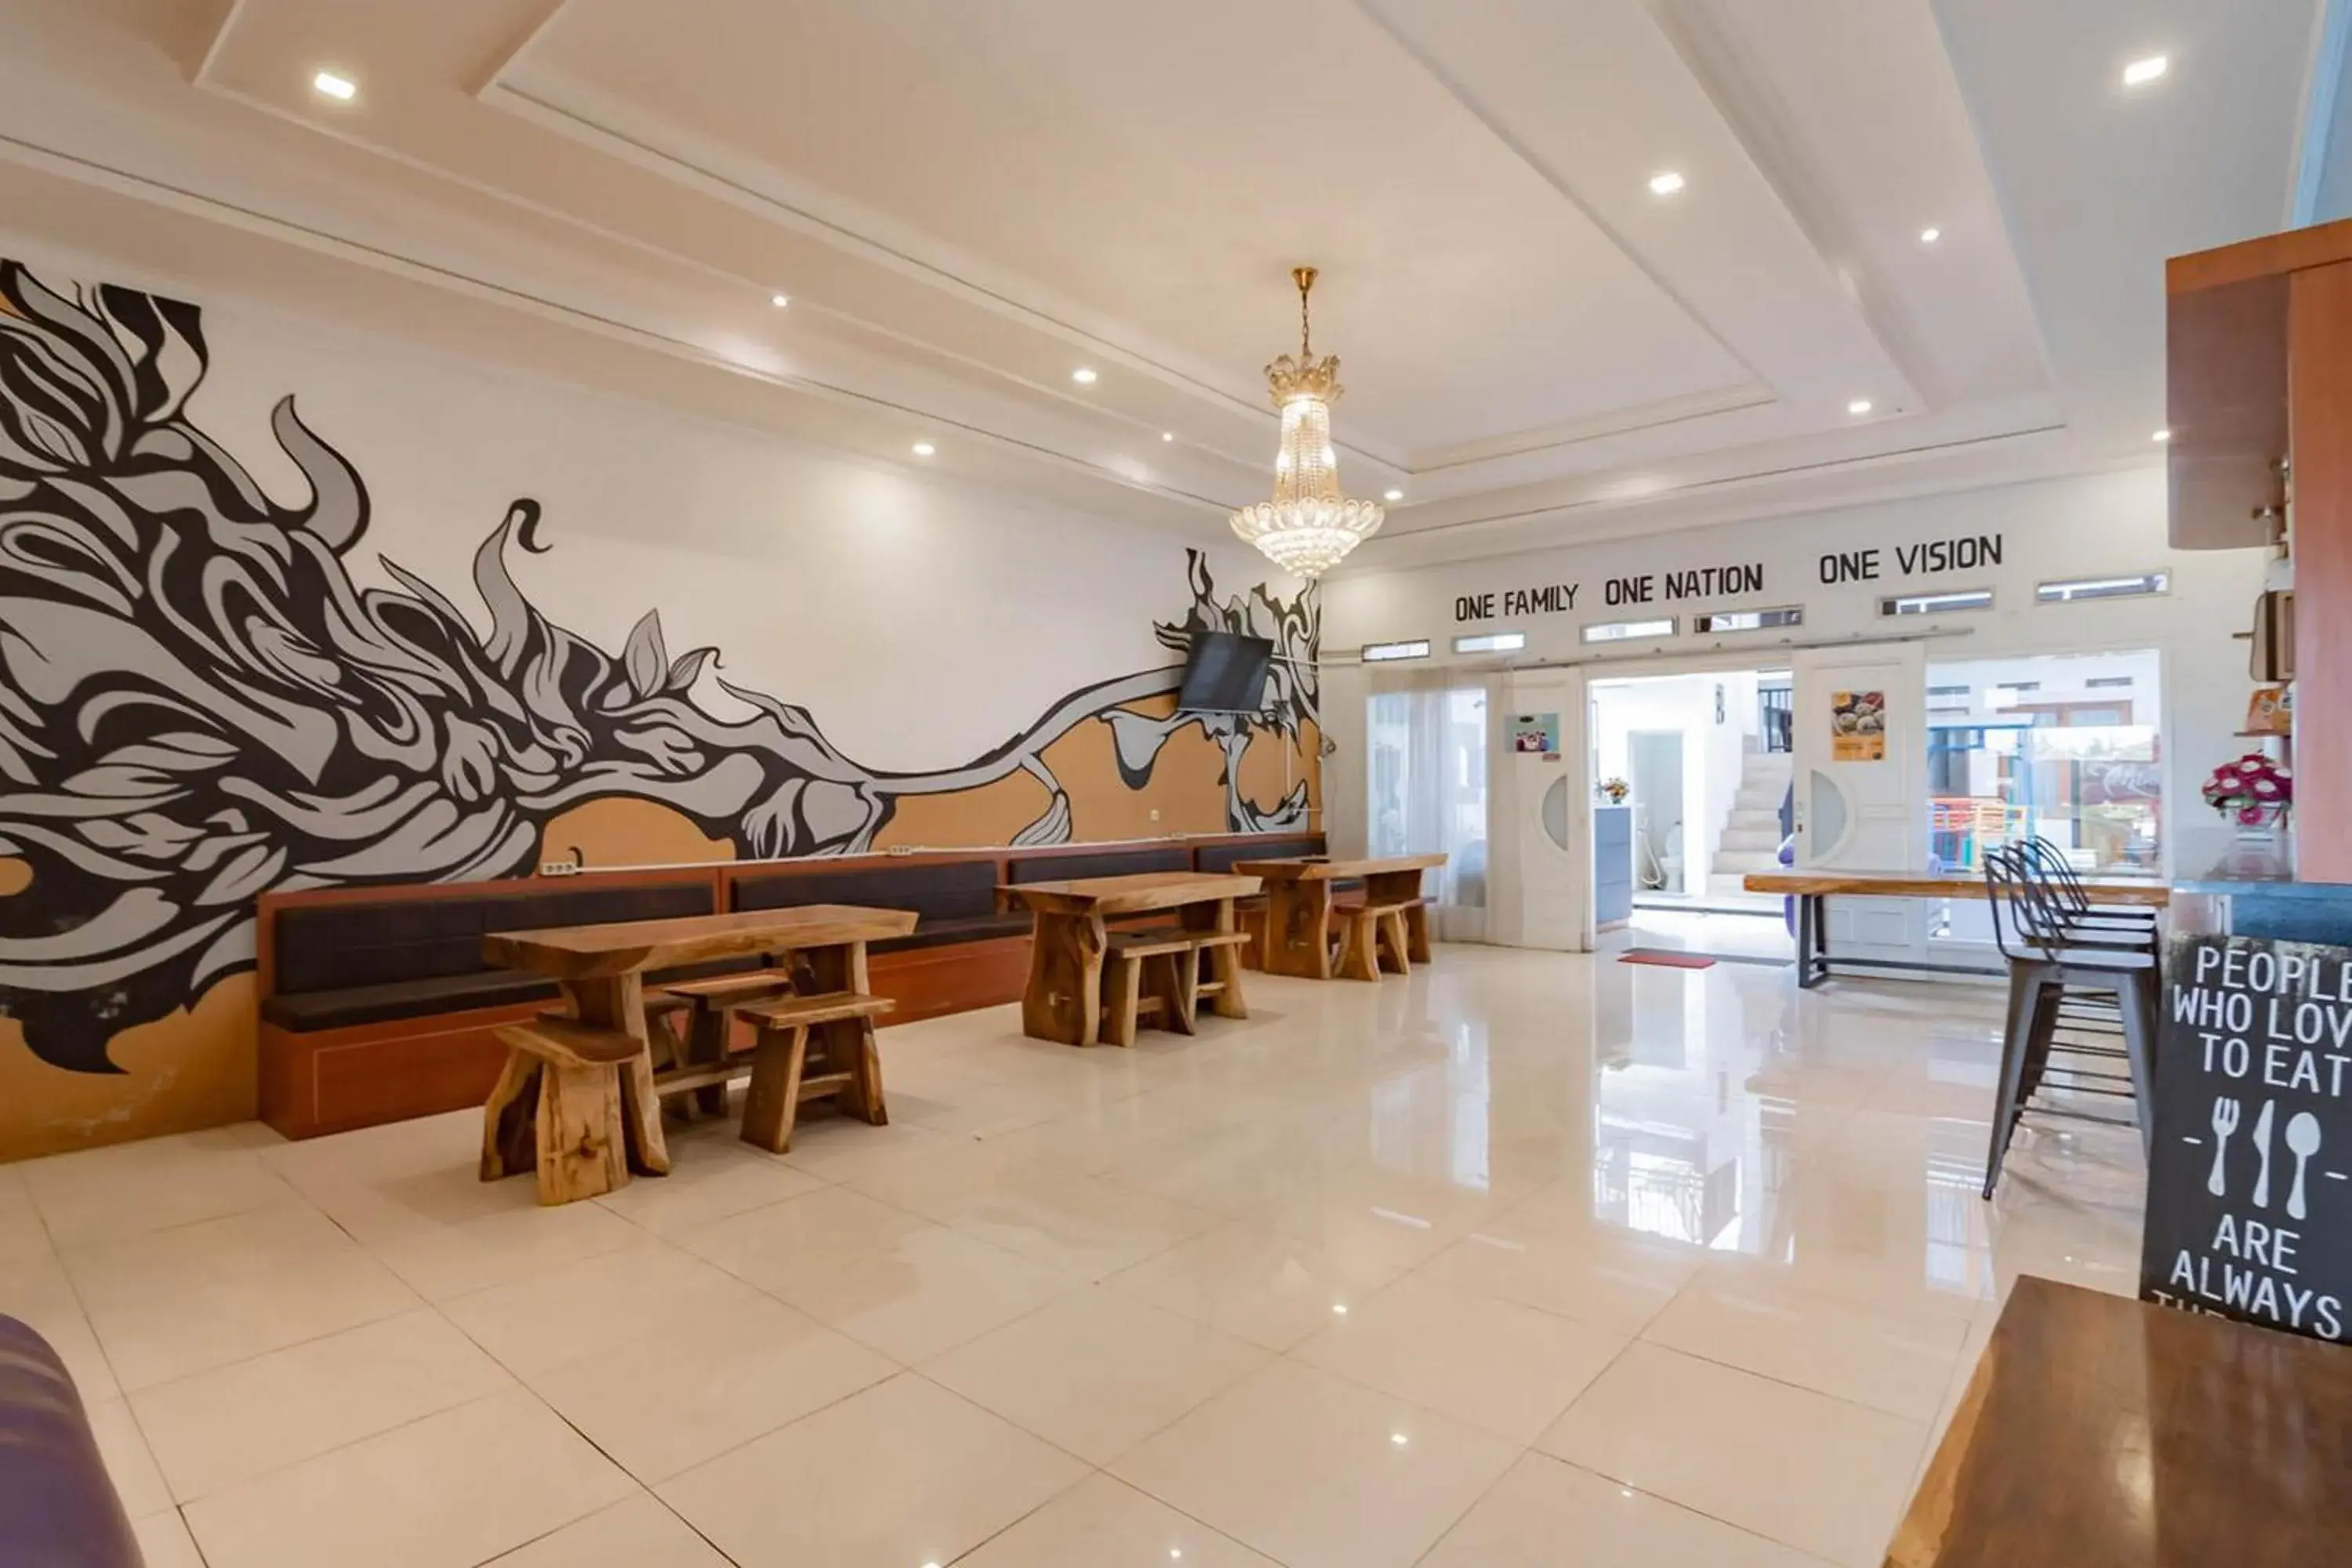 Lobby or reception in Urbanview Hotel Maribaya Lembang Bandung